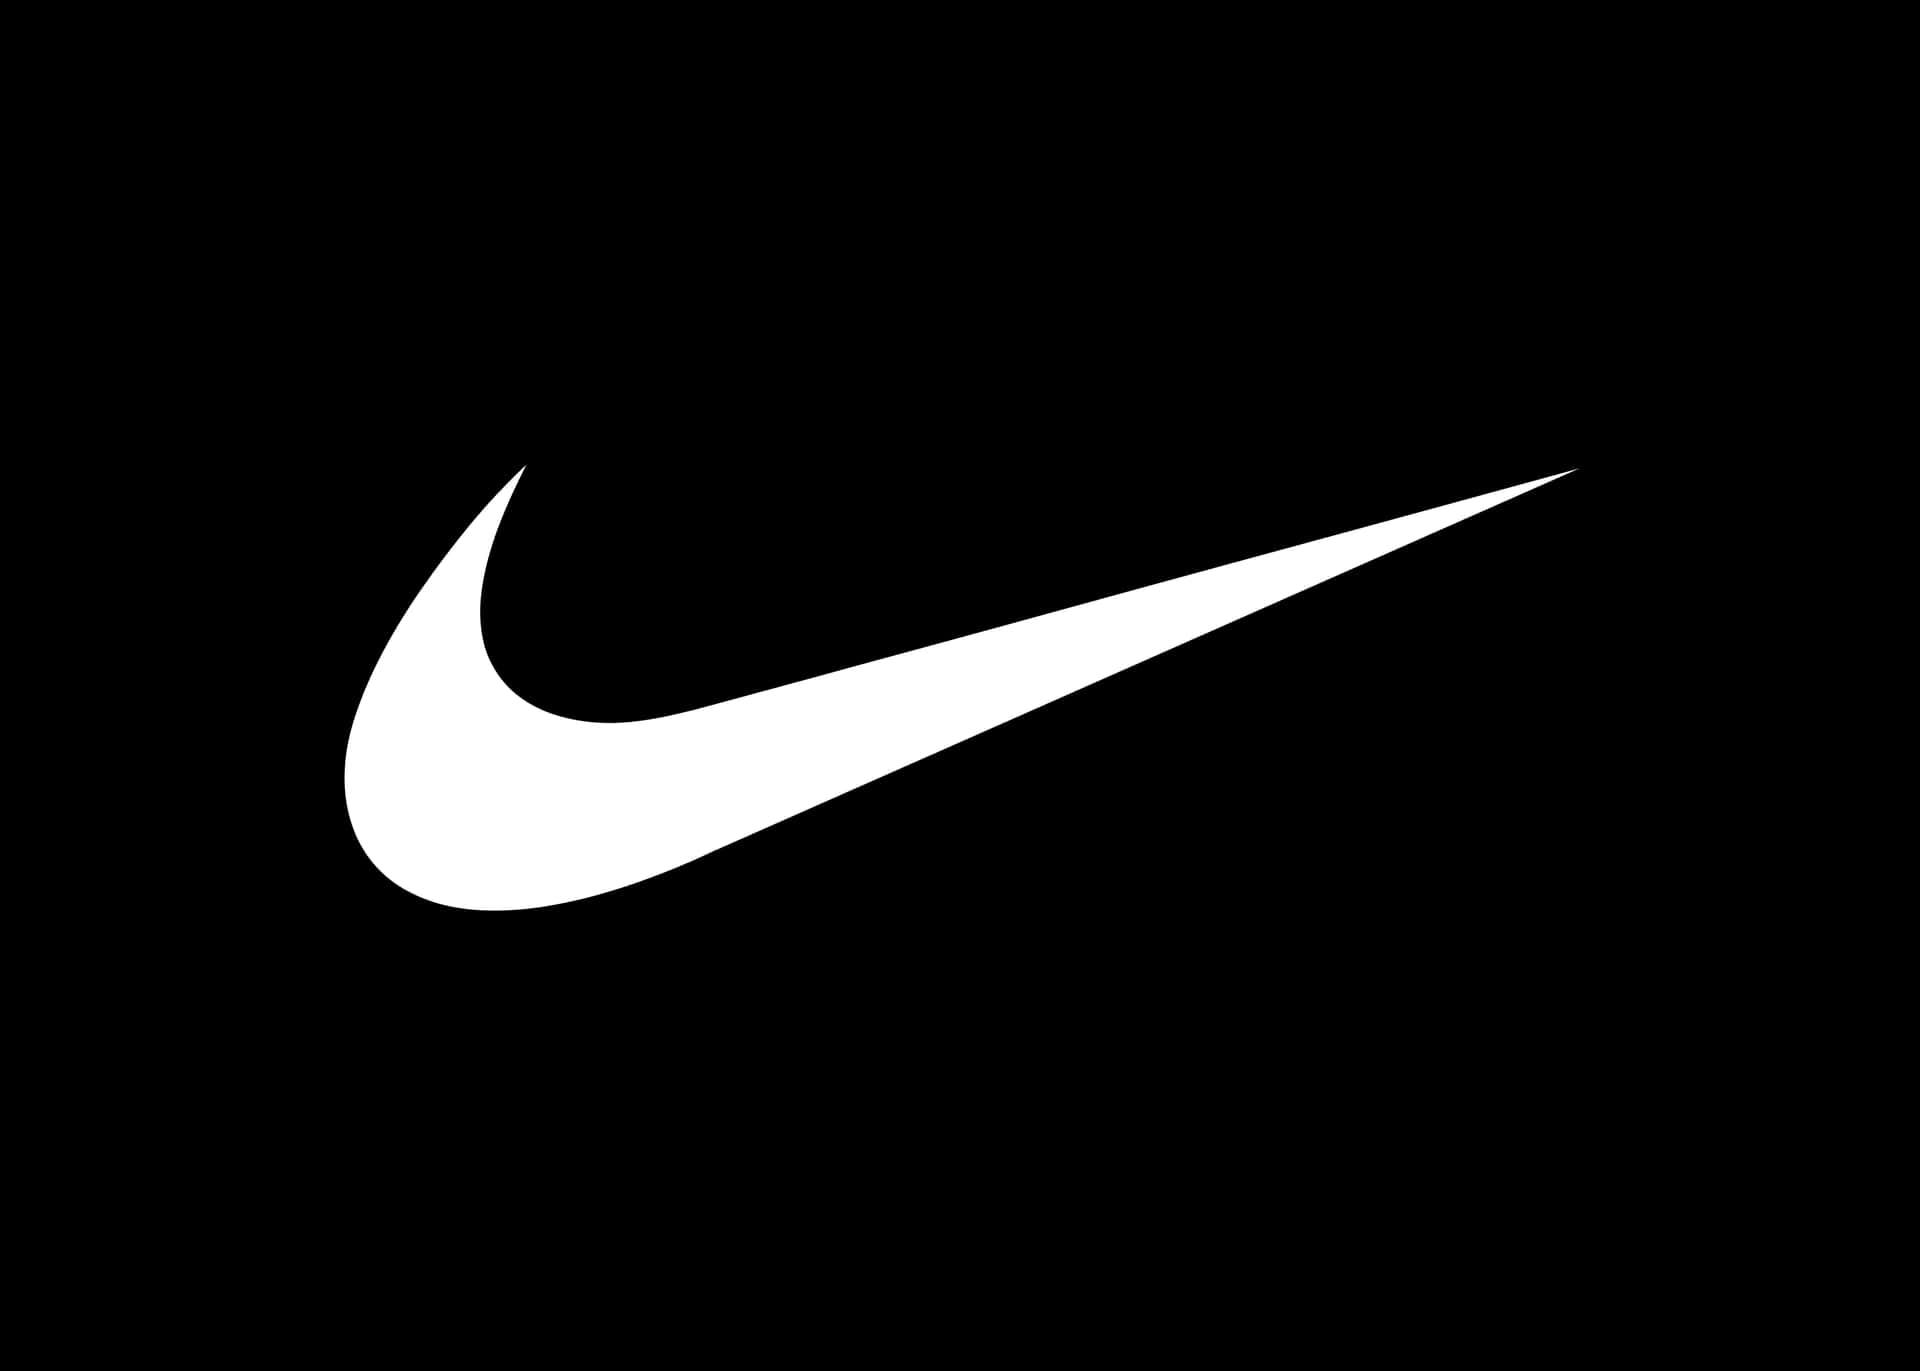 Sort Nike 7216 X 5154 Wallpaper